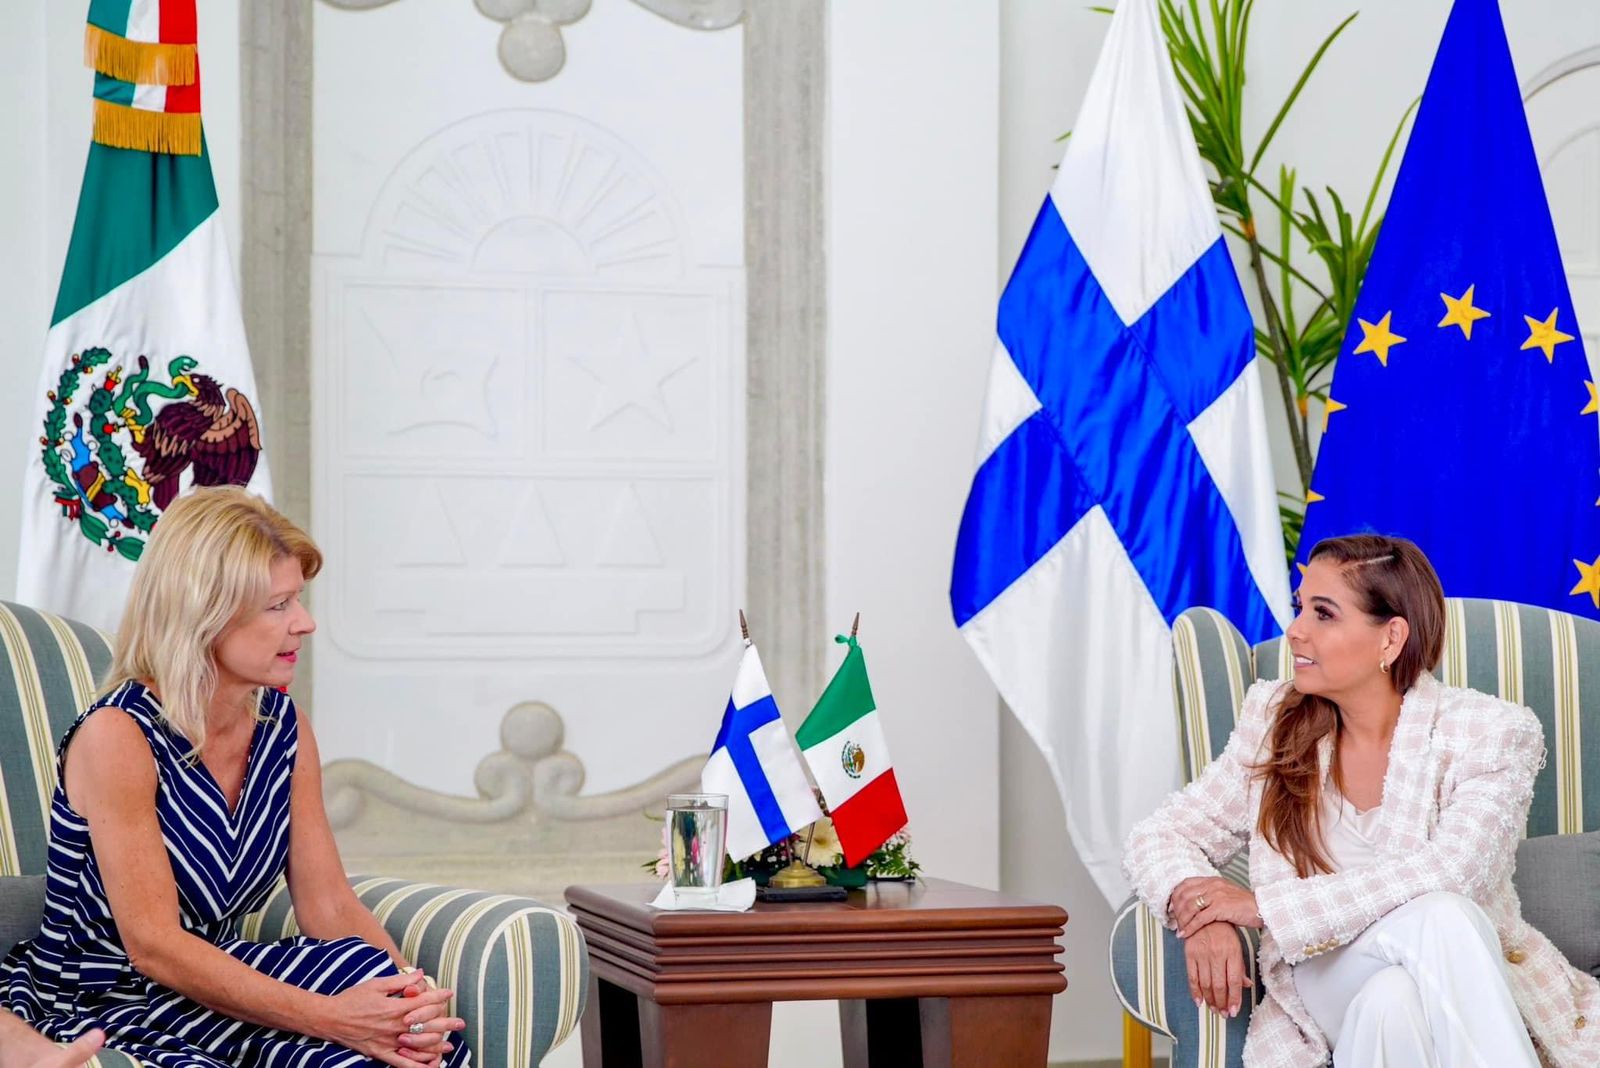 Gobierno de Quintana Roo trabaja con embajada de Finlandia para generar prosperidad compartida